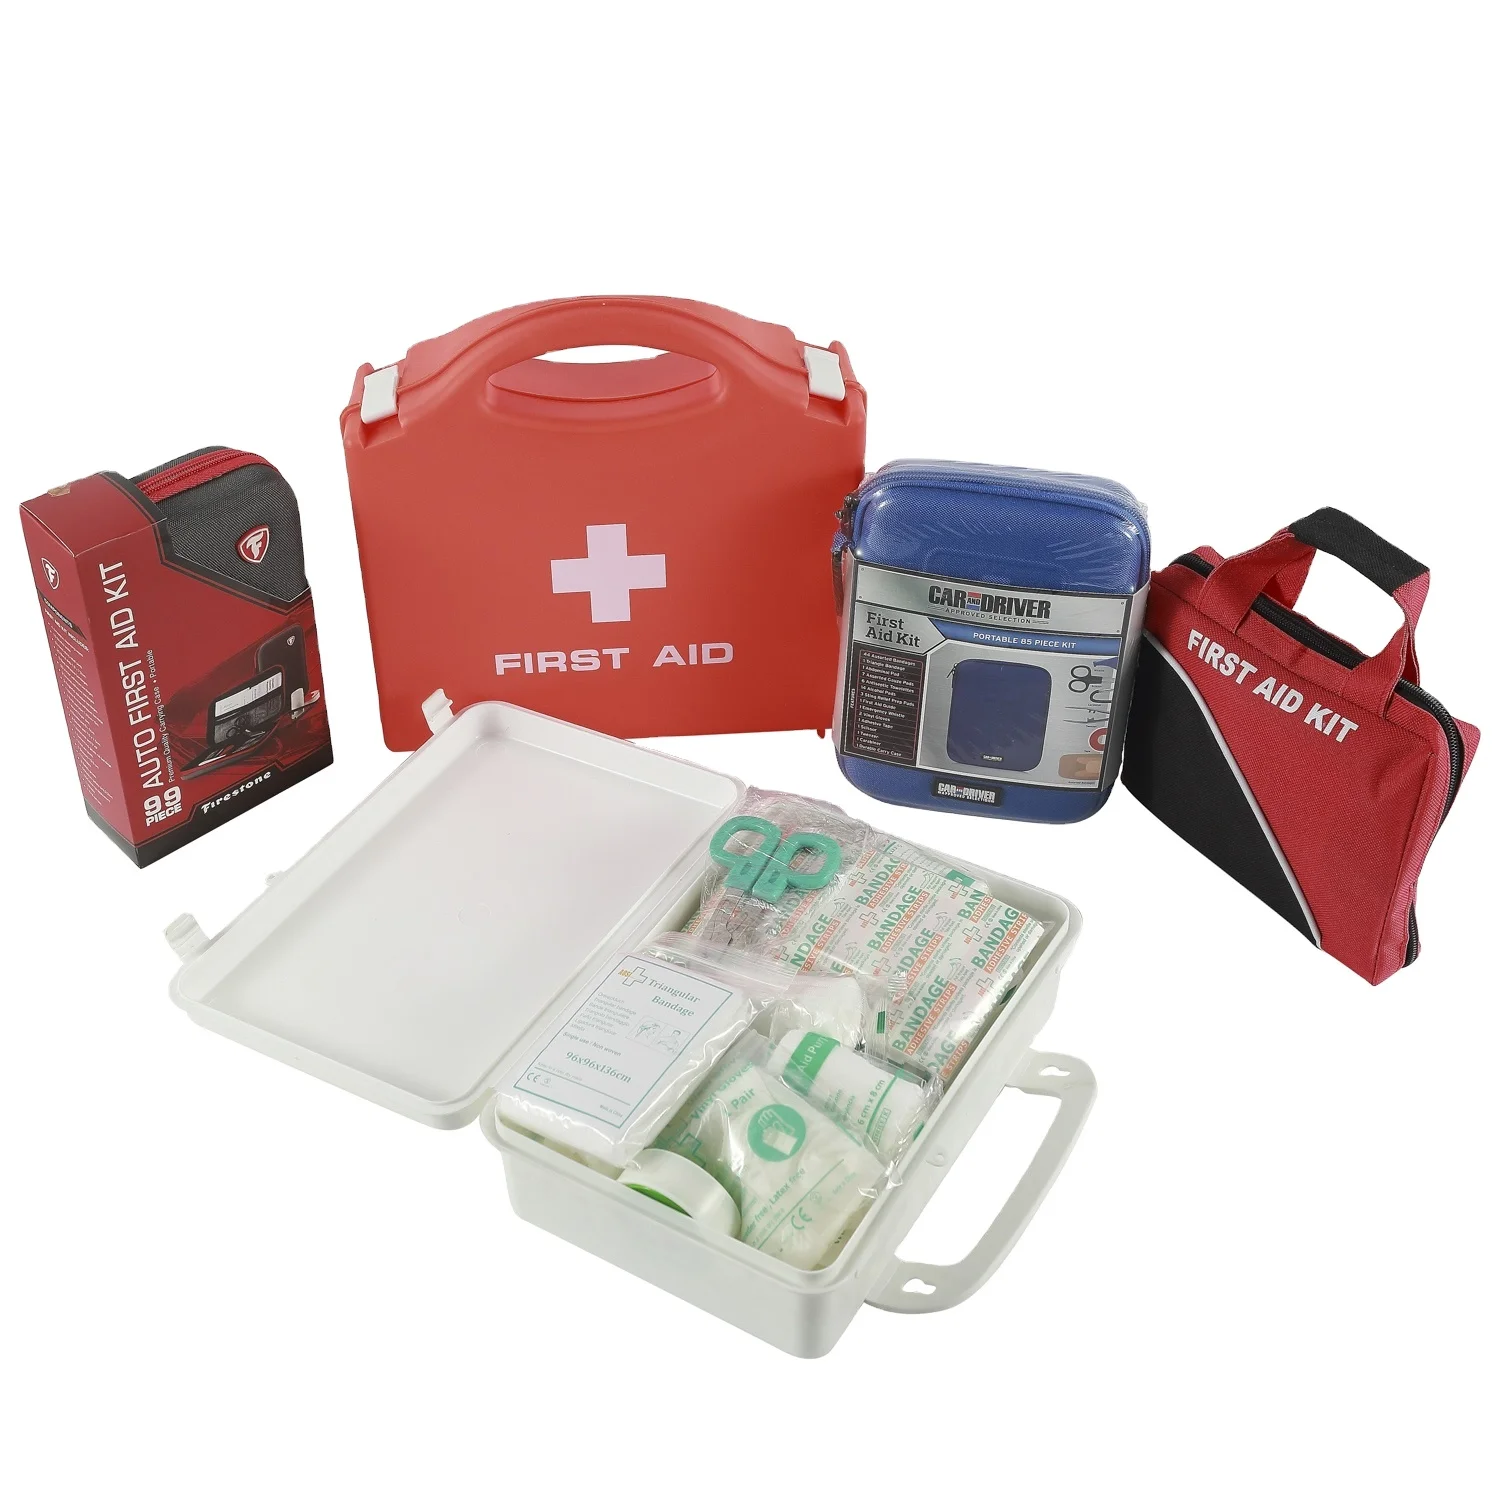 
high quailty first aid kits box for sale  (1600199001180)